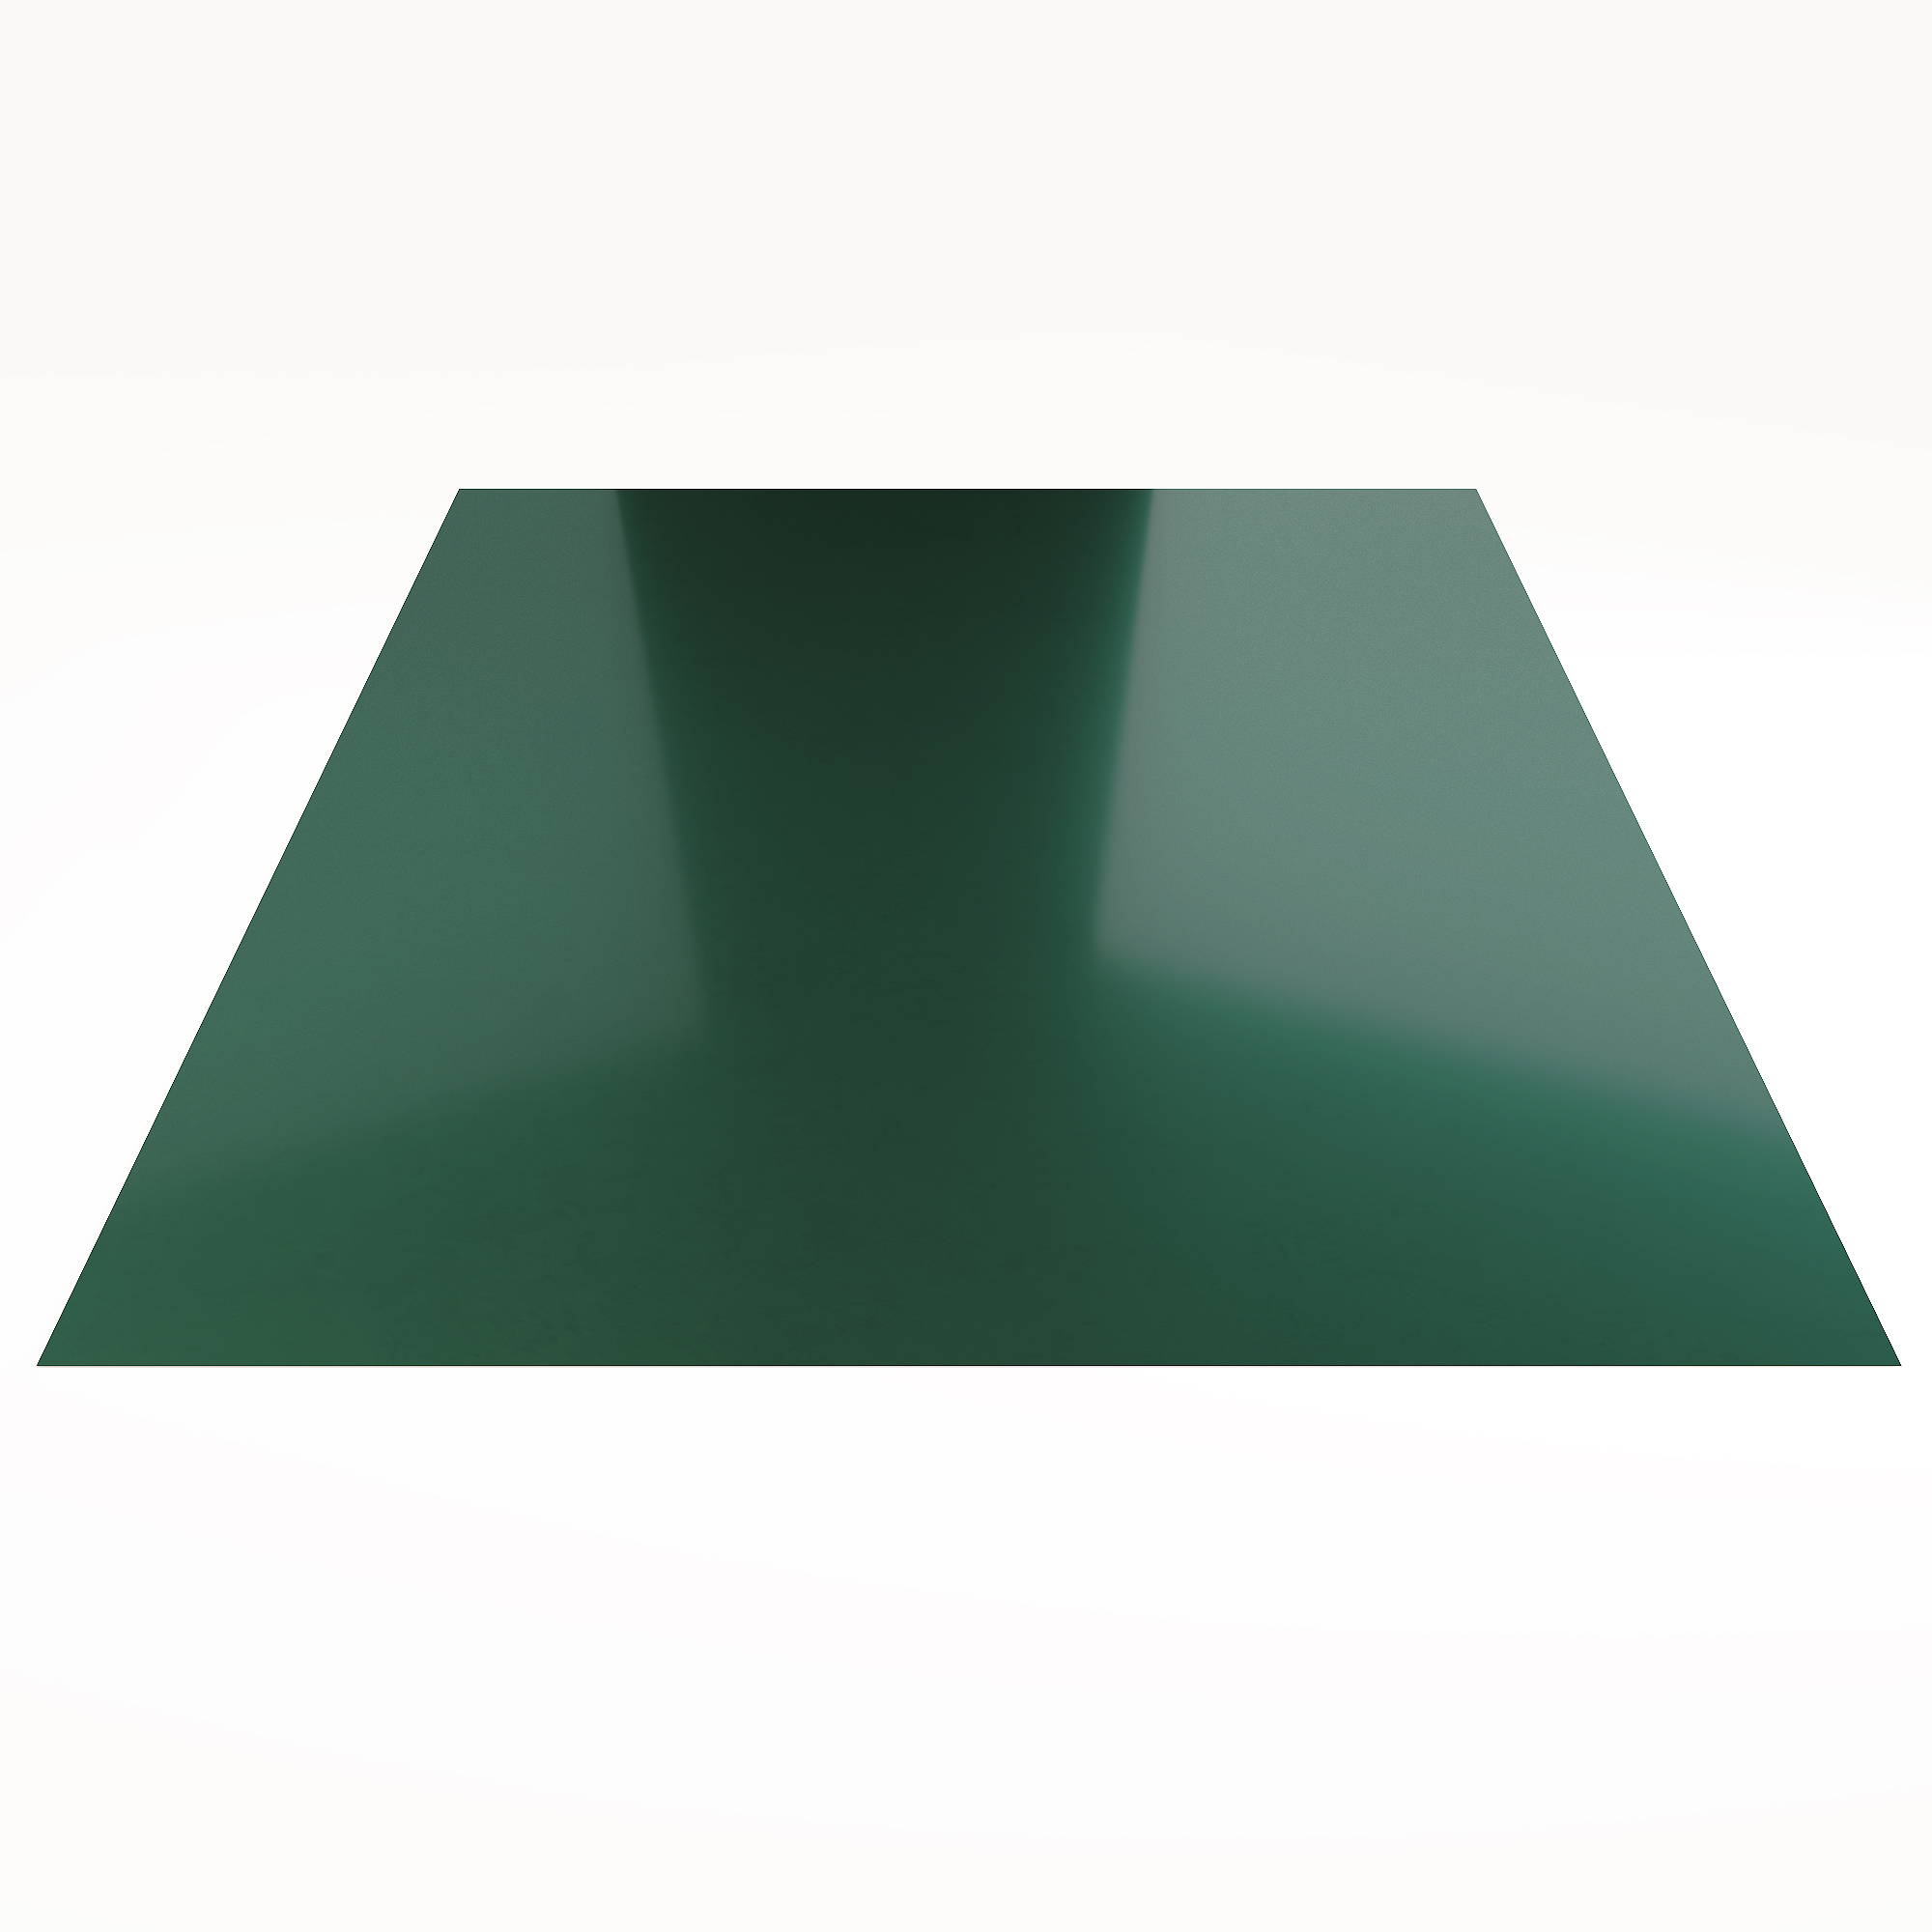 Гладкий лист Гладкий полиэстер RAL 6005 (Зелёный мох) 1500*1250*0,3 односторонний ламинированный